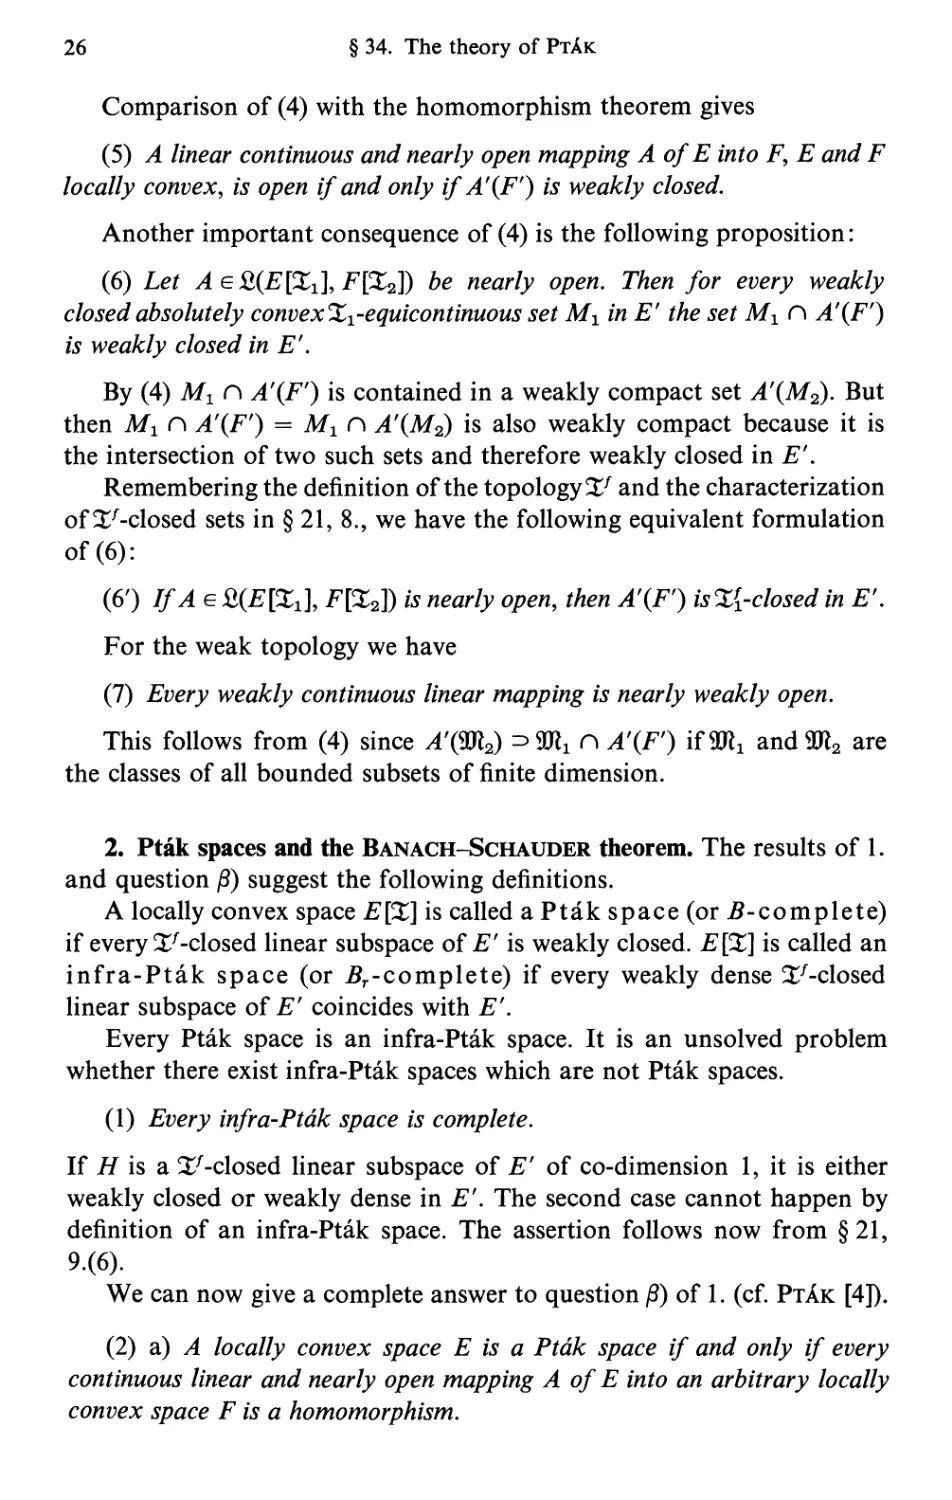 2. Pták spaces and the Banach-Schauder theorem